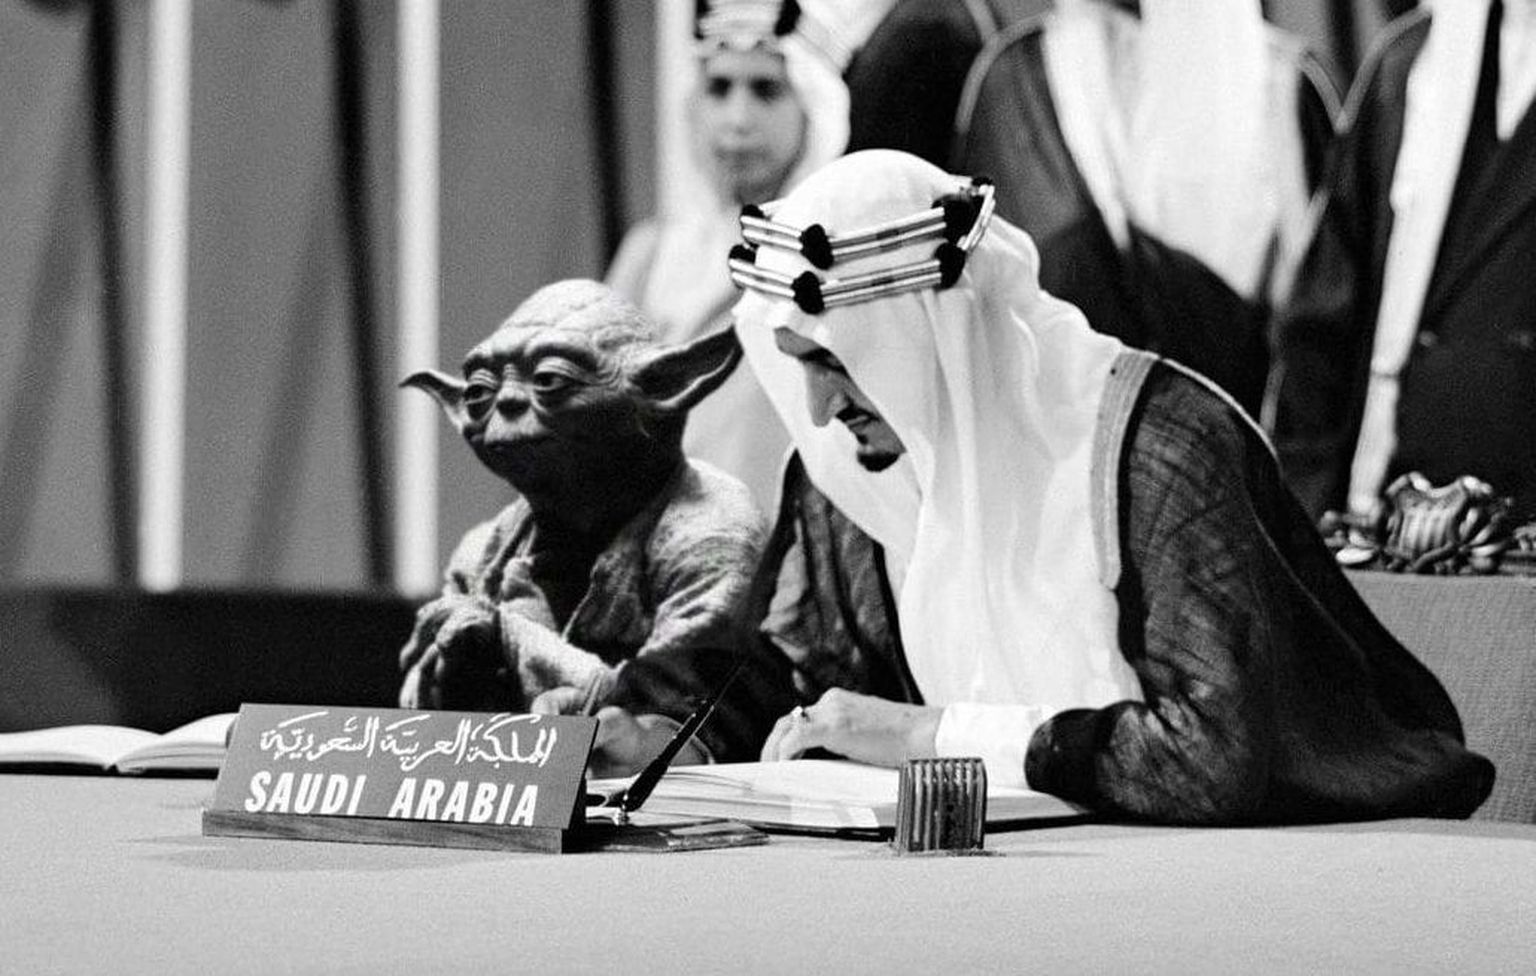 Töödeldud foto, millel on Saudi Araabia kroonprintsi näha koos Yodaga